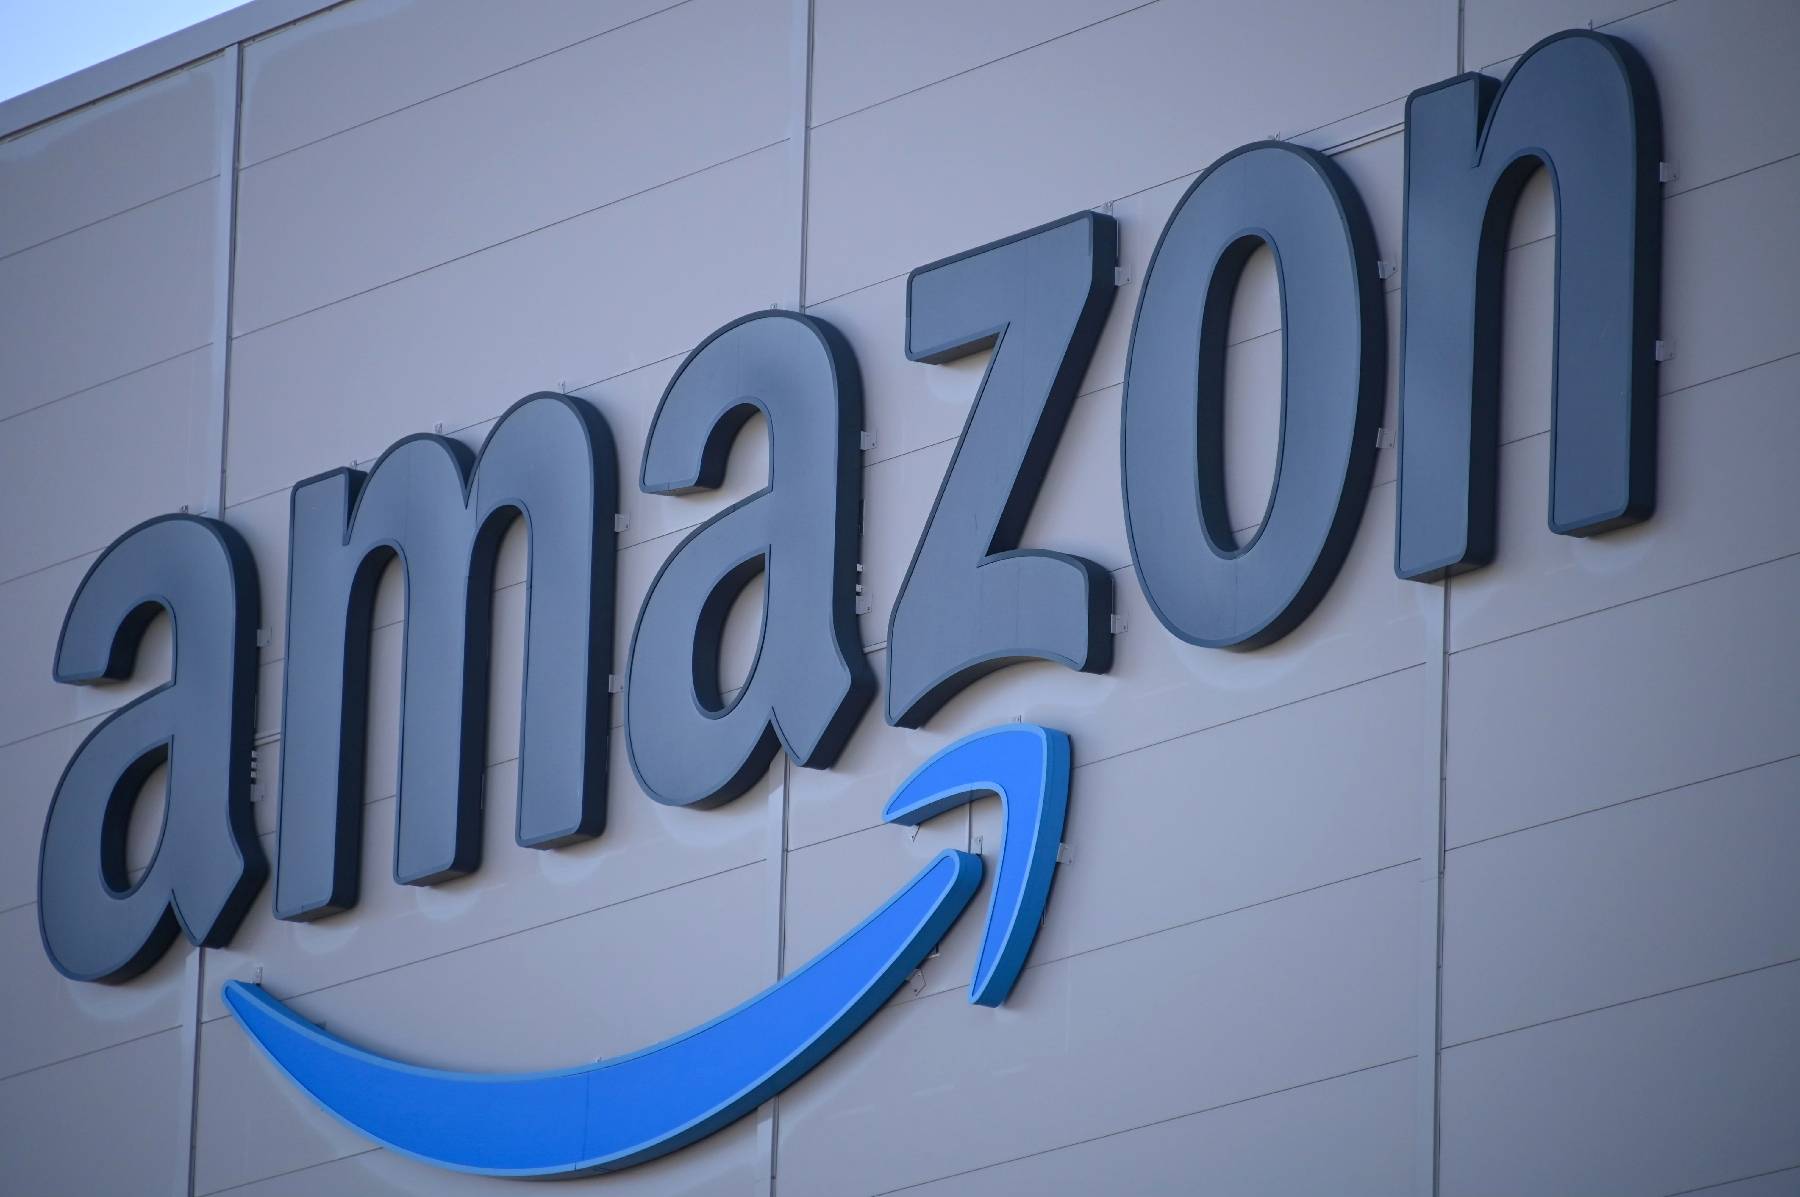 Contrats commerciaux : pénalité de 3,3 millions d'euros infligée à Amazon France par les services des fraudes